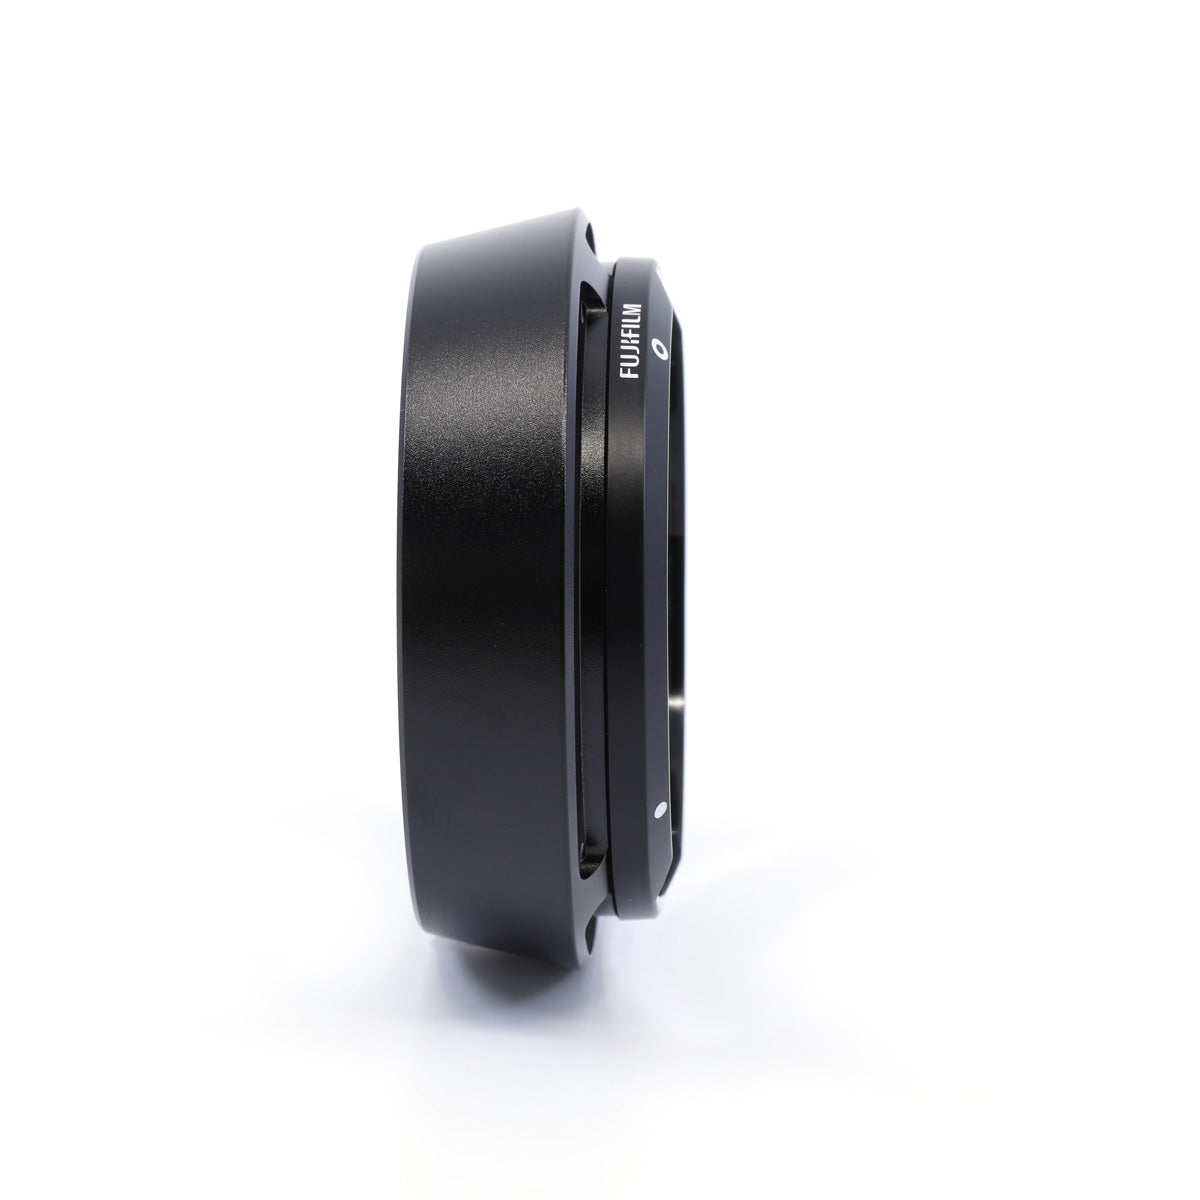 Fujifilm Metal Lens Hood for XF 35mm and XF 23mm F2 R WR Black